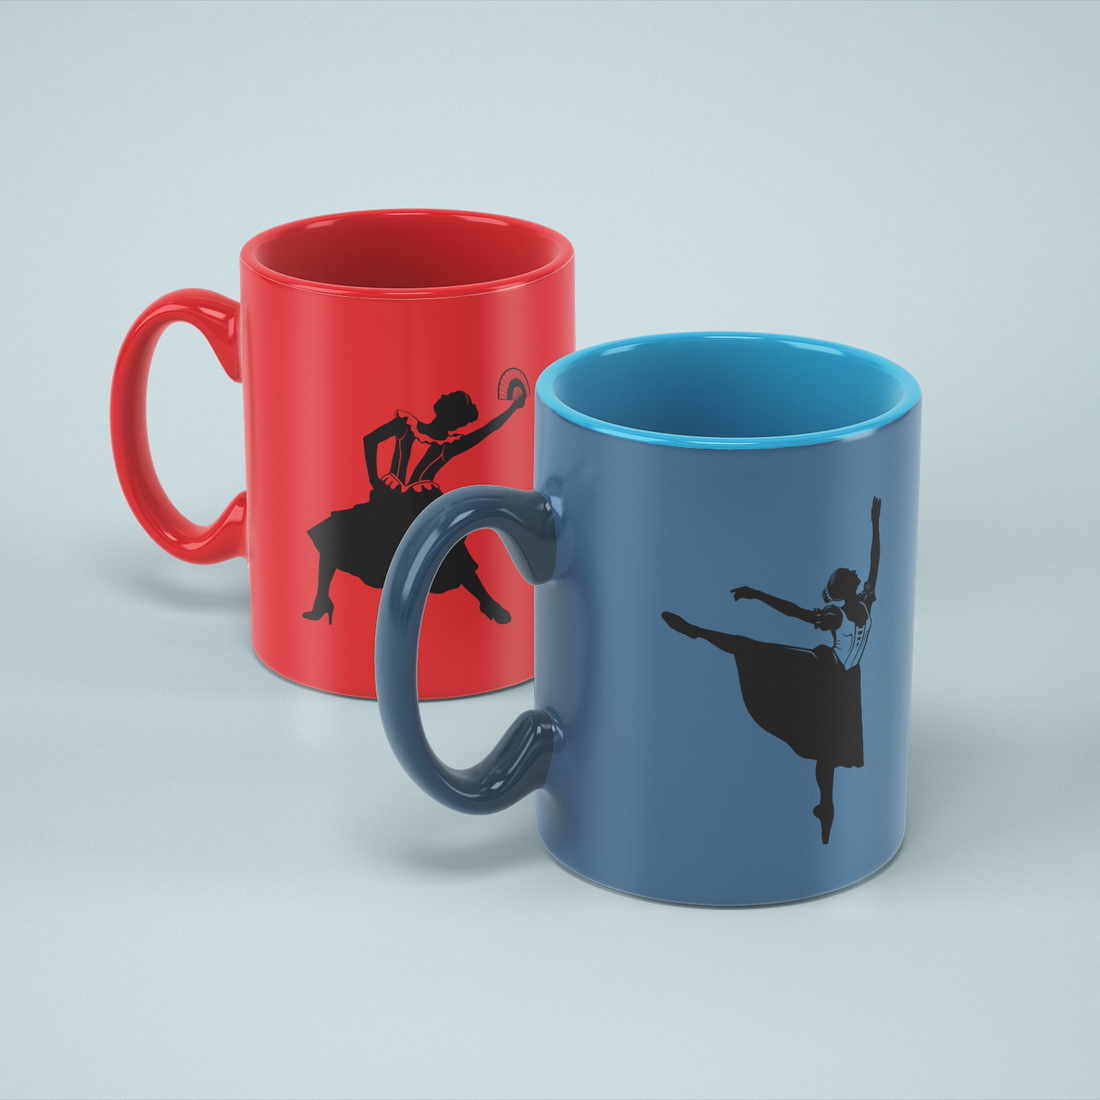 Two mugs with dancing women.